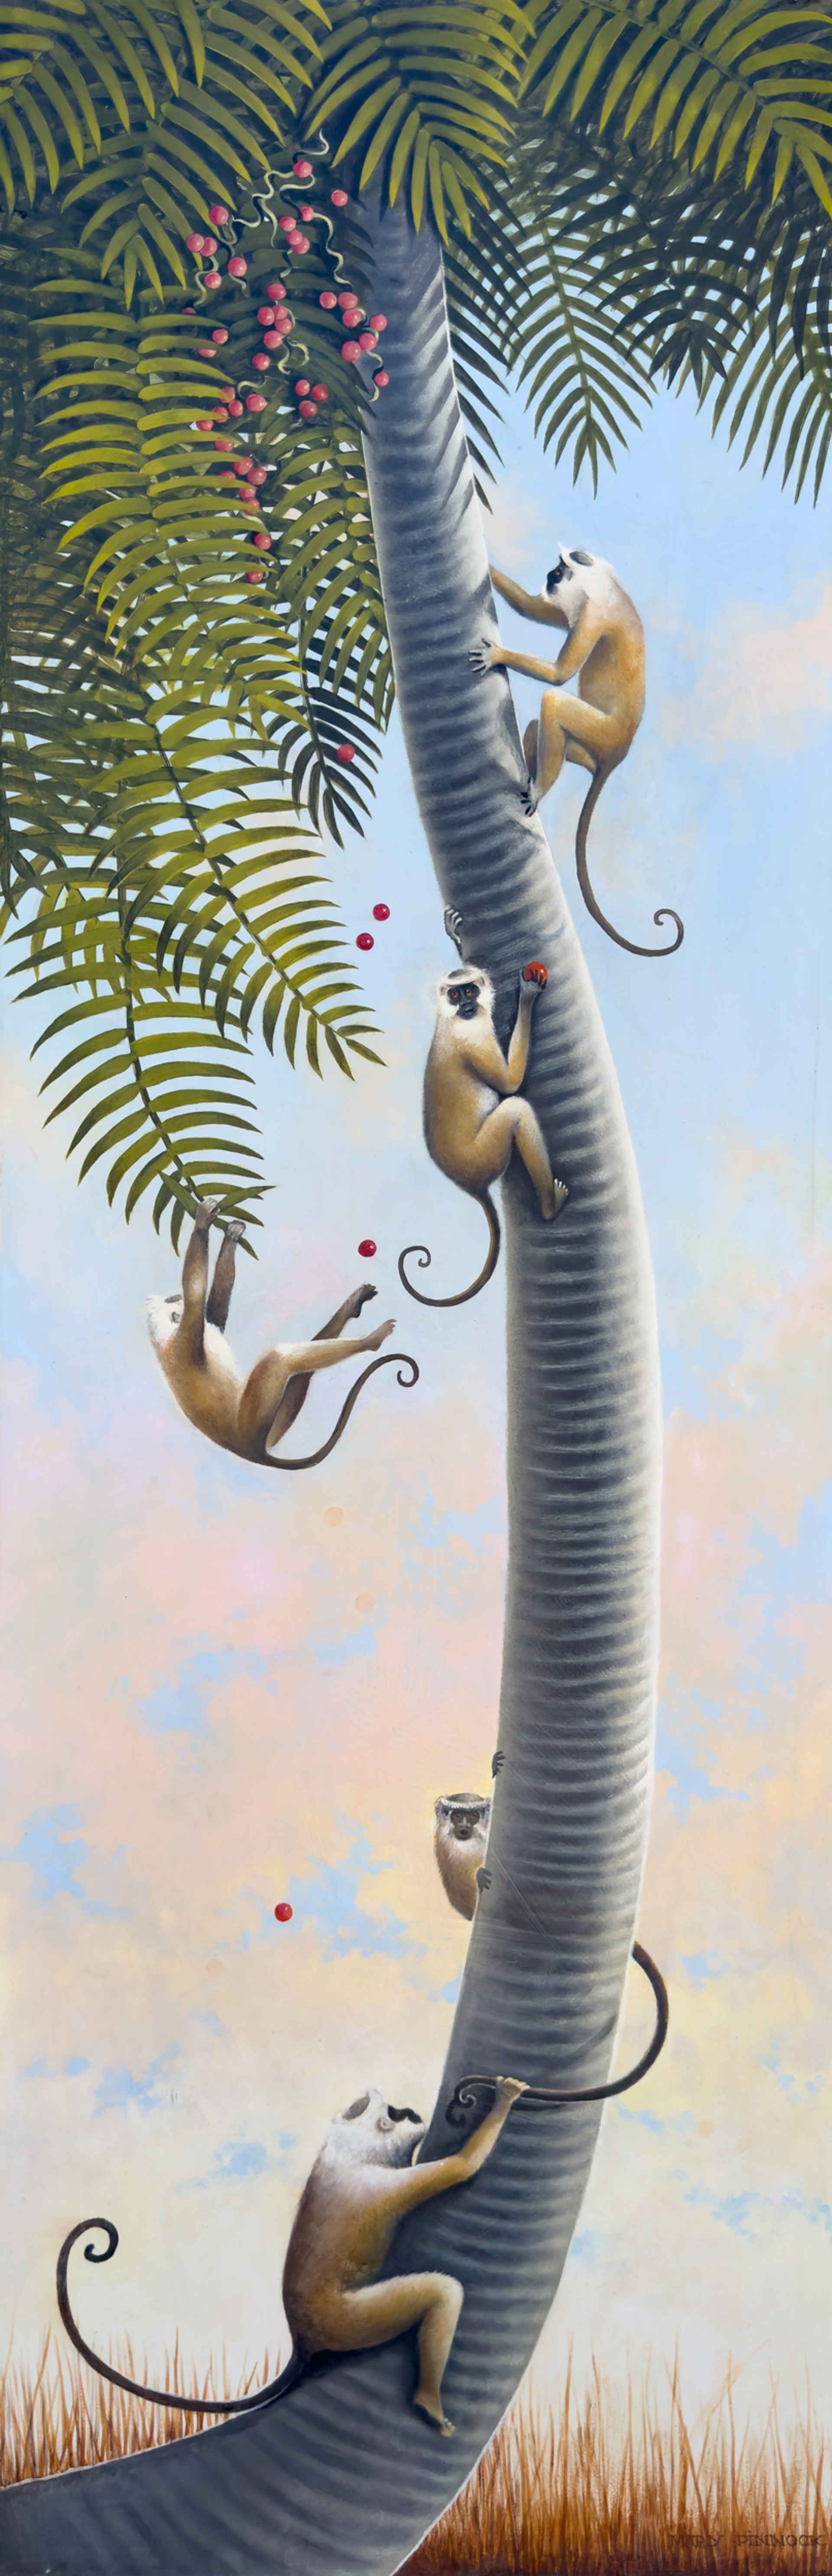 Monkey Heaven by Mary Pinnock